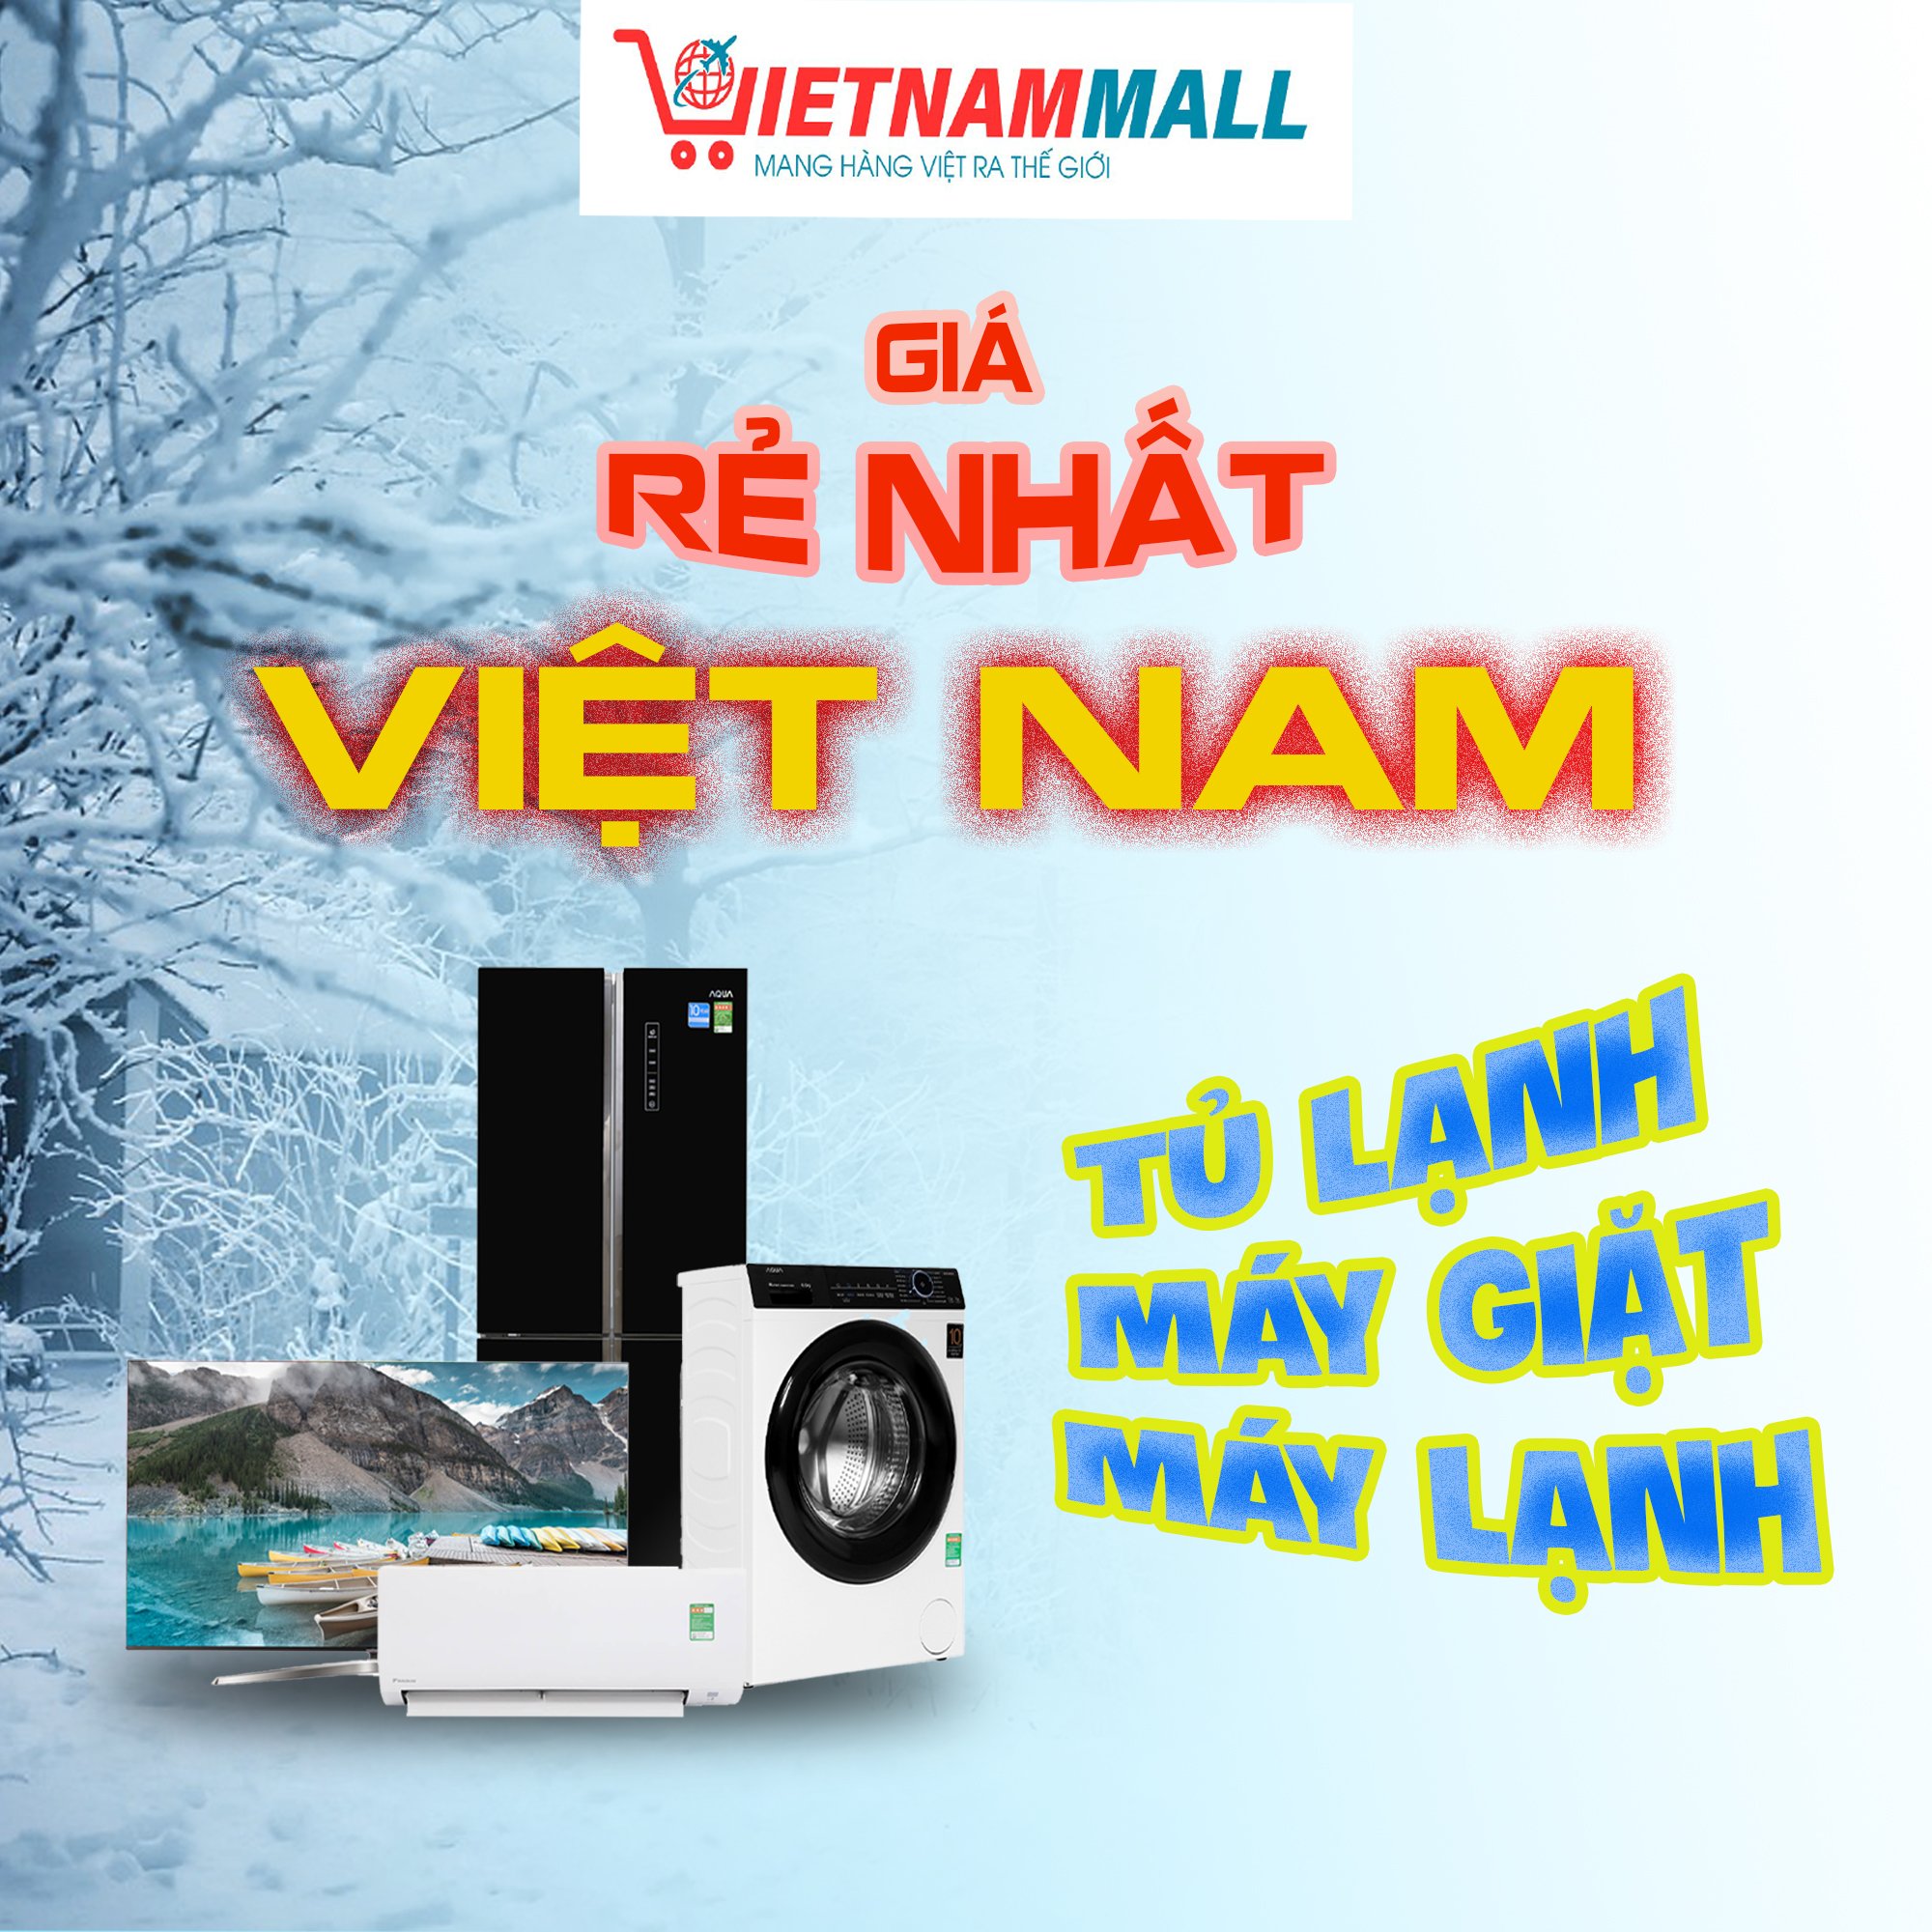 VietnamMall Điện máy